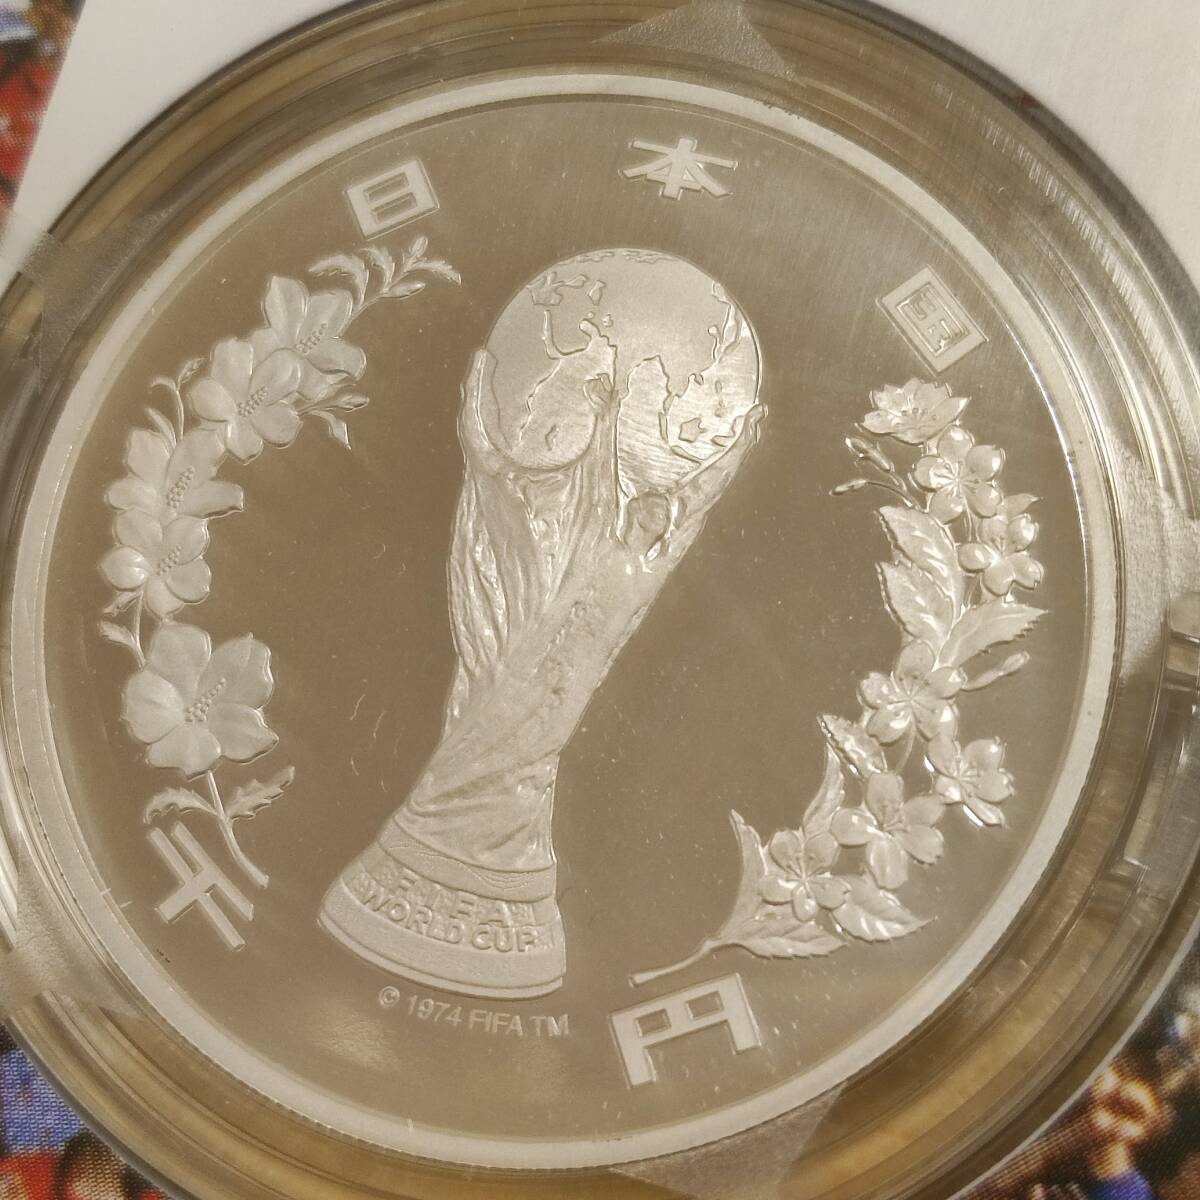 2002FIFAワールドカップ記念貨幣 千円銀貨幣 プルーフ貨幣セット 純銀 31.1g 2002年 平成14年 1000円 記念銀貨の画像3